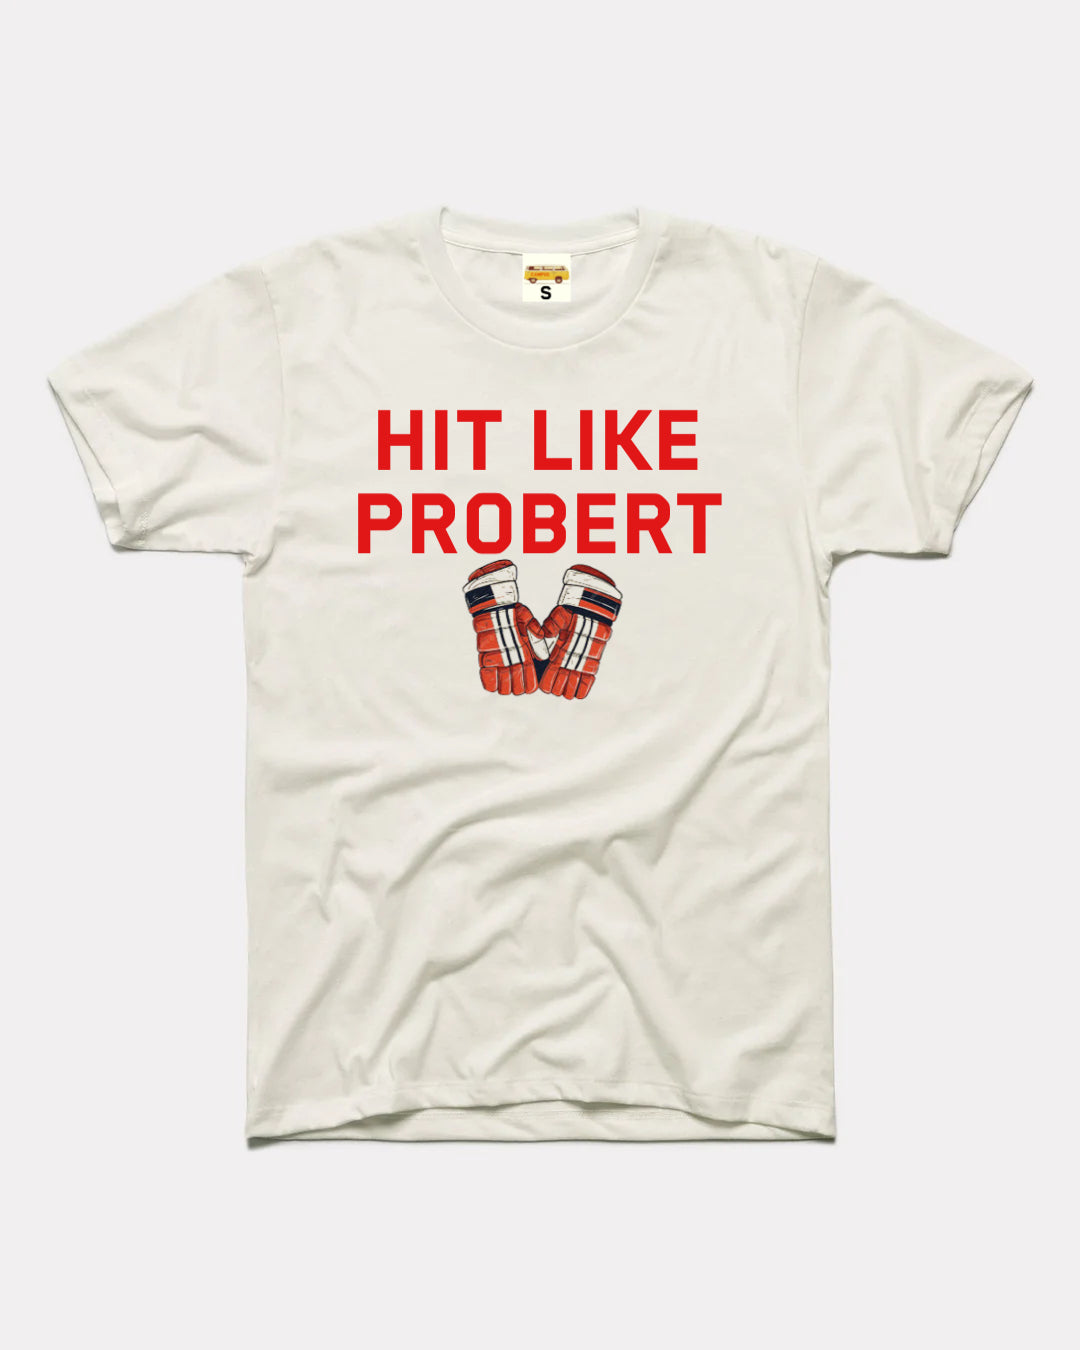 Hit like Probert.